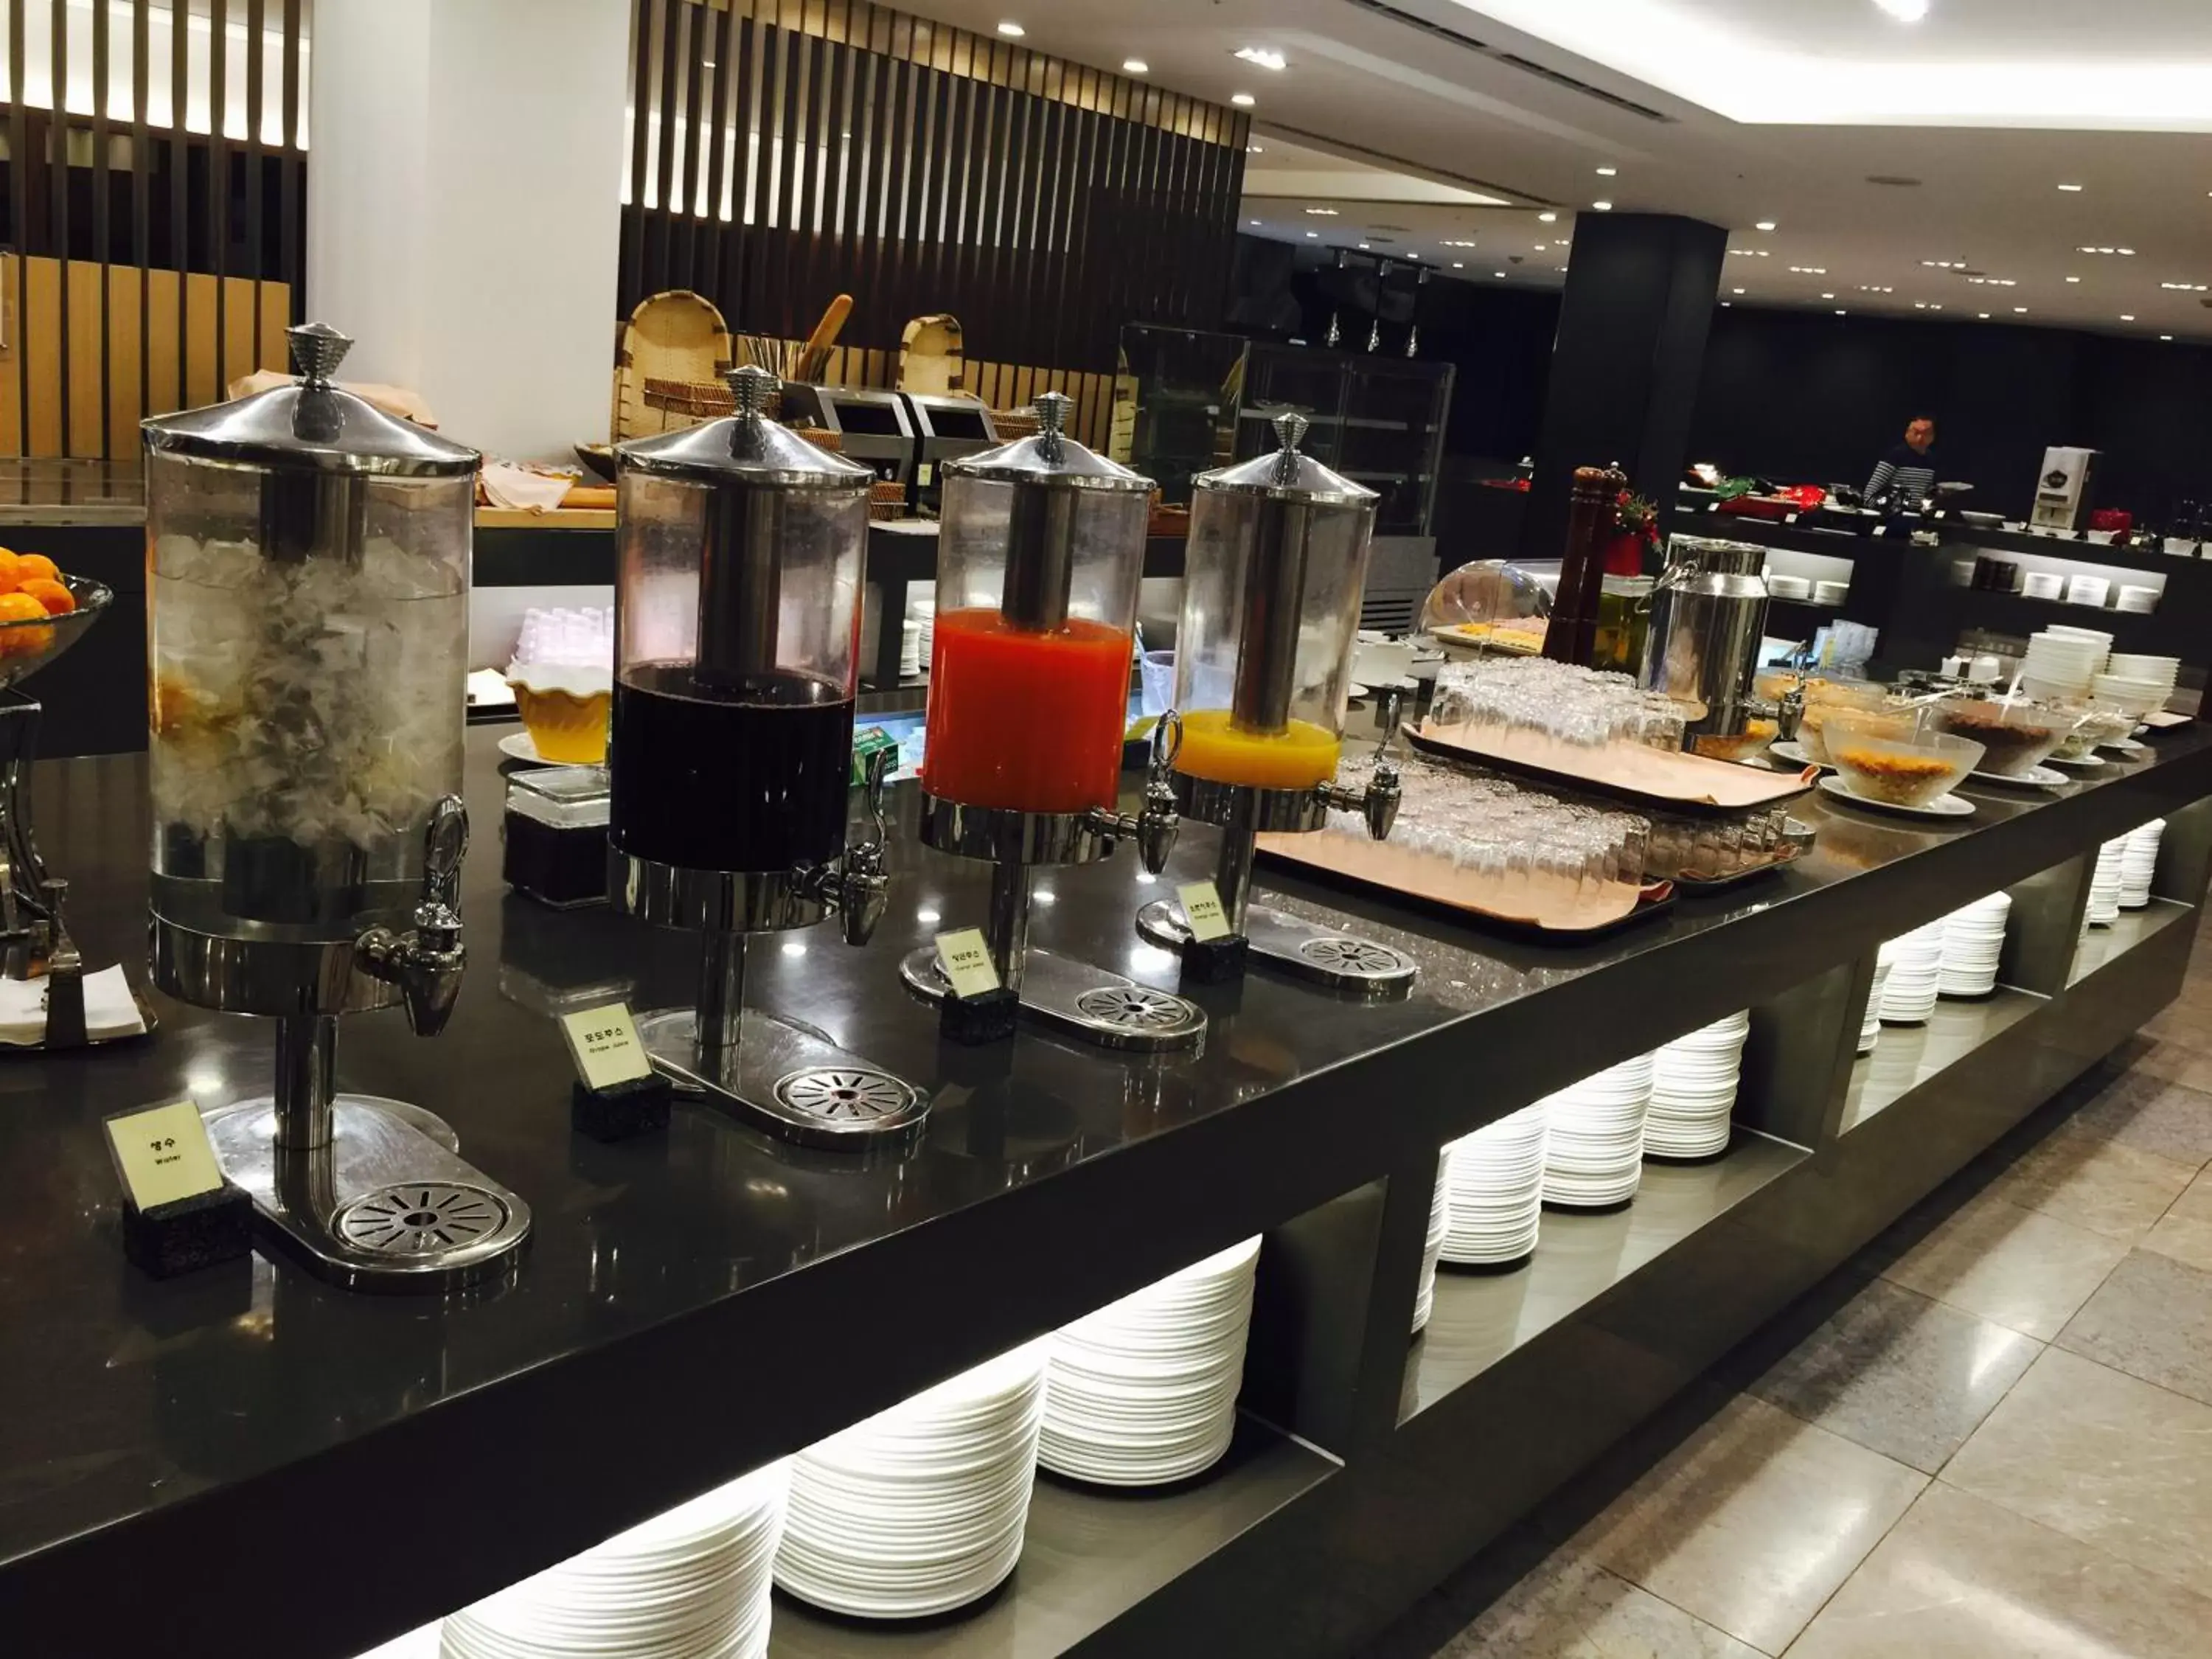 Buffet breakfast in Seoul Garden Hotel